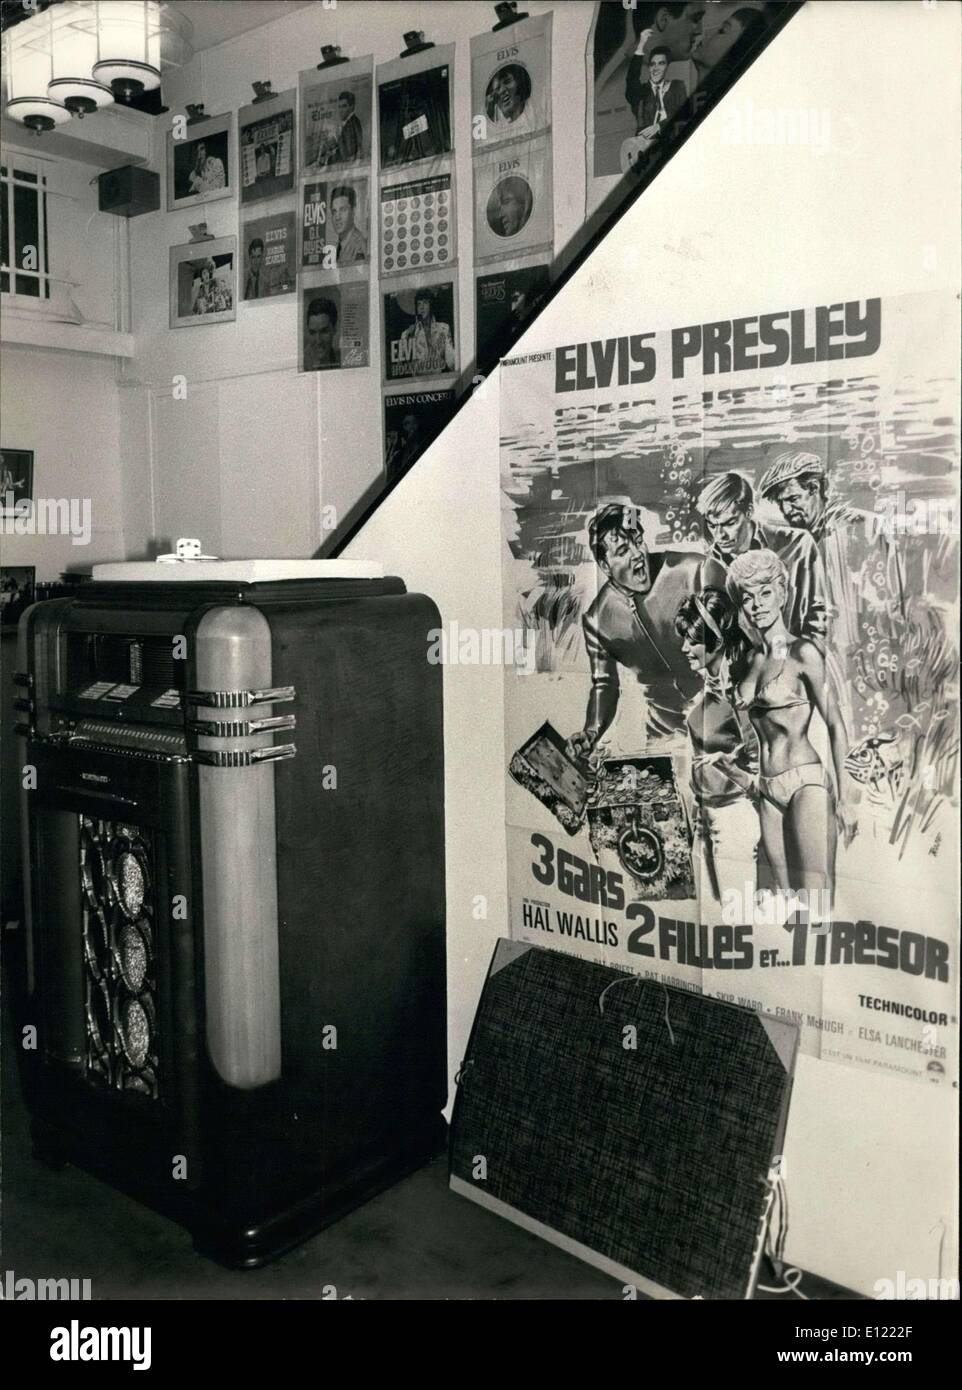 Dic. 03, 1982 - Elvis Presley presentano Foto Stock